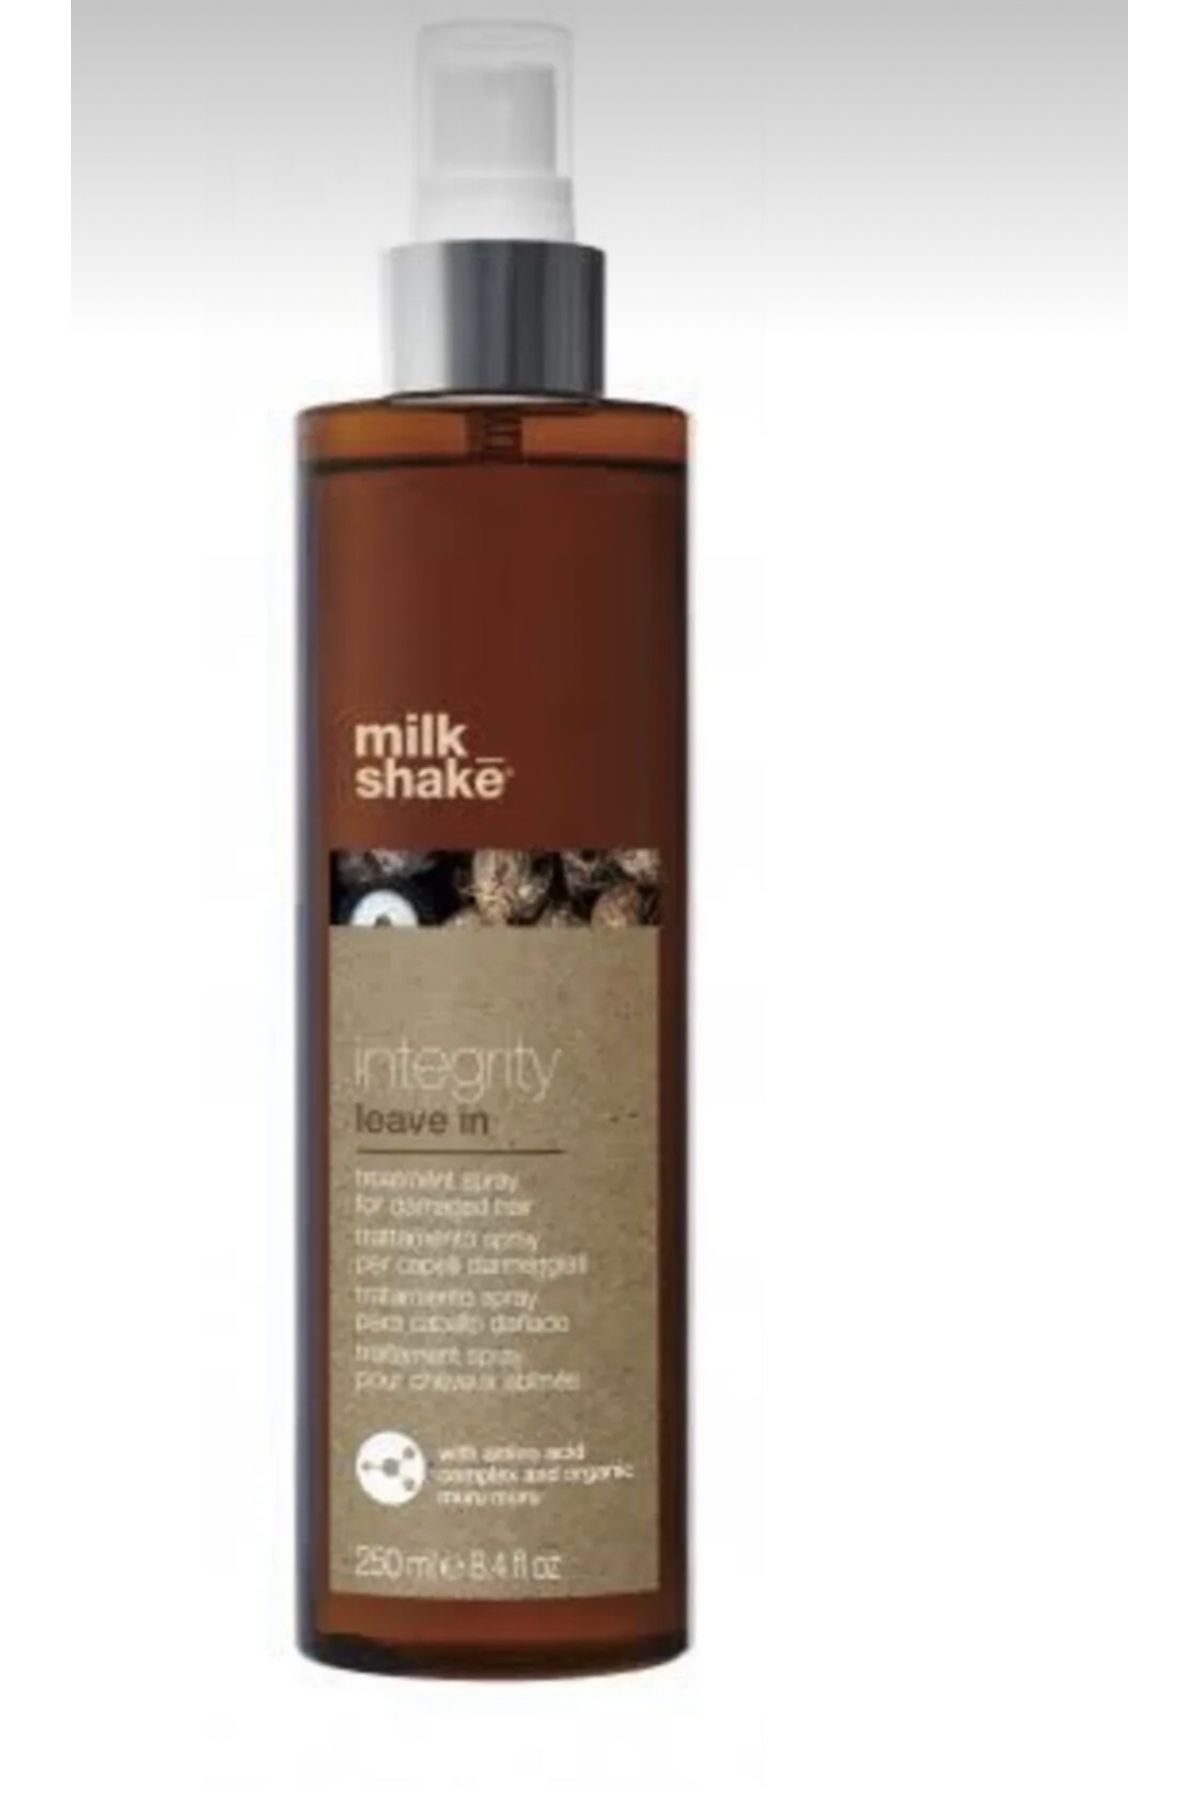 Milkshake Integrity Hasarlı Saçlar İçin Bakım Spreyi 250 Ml